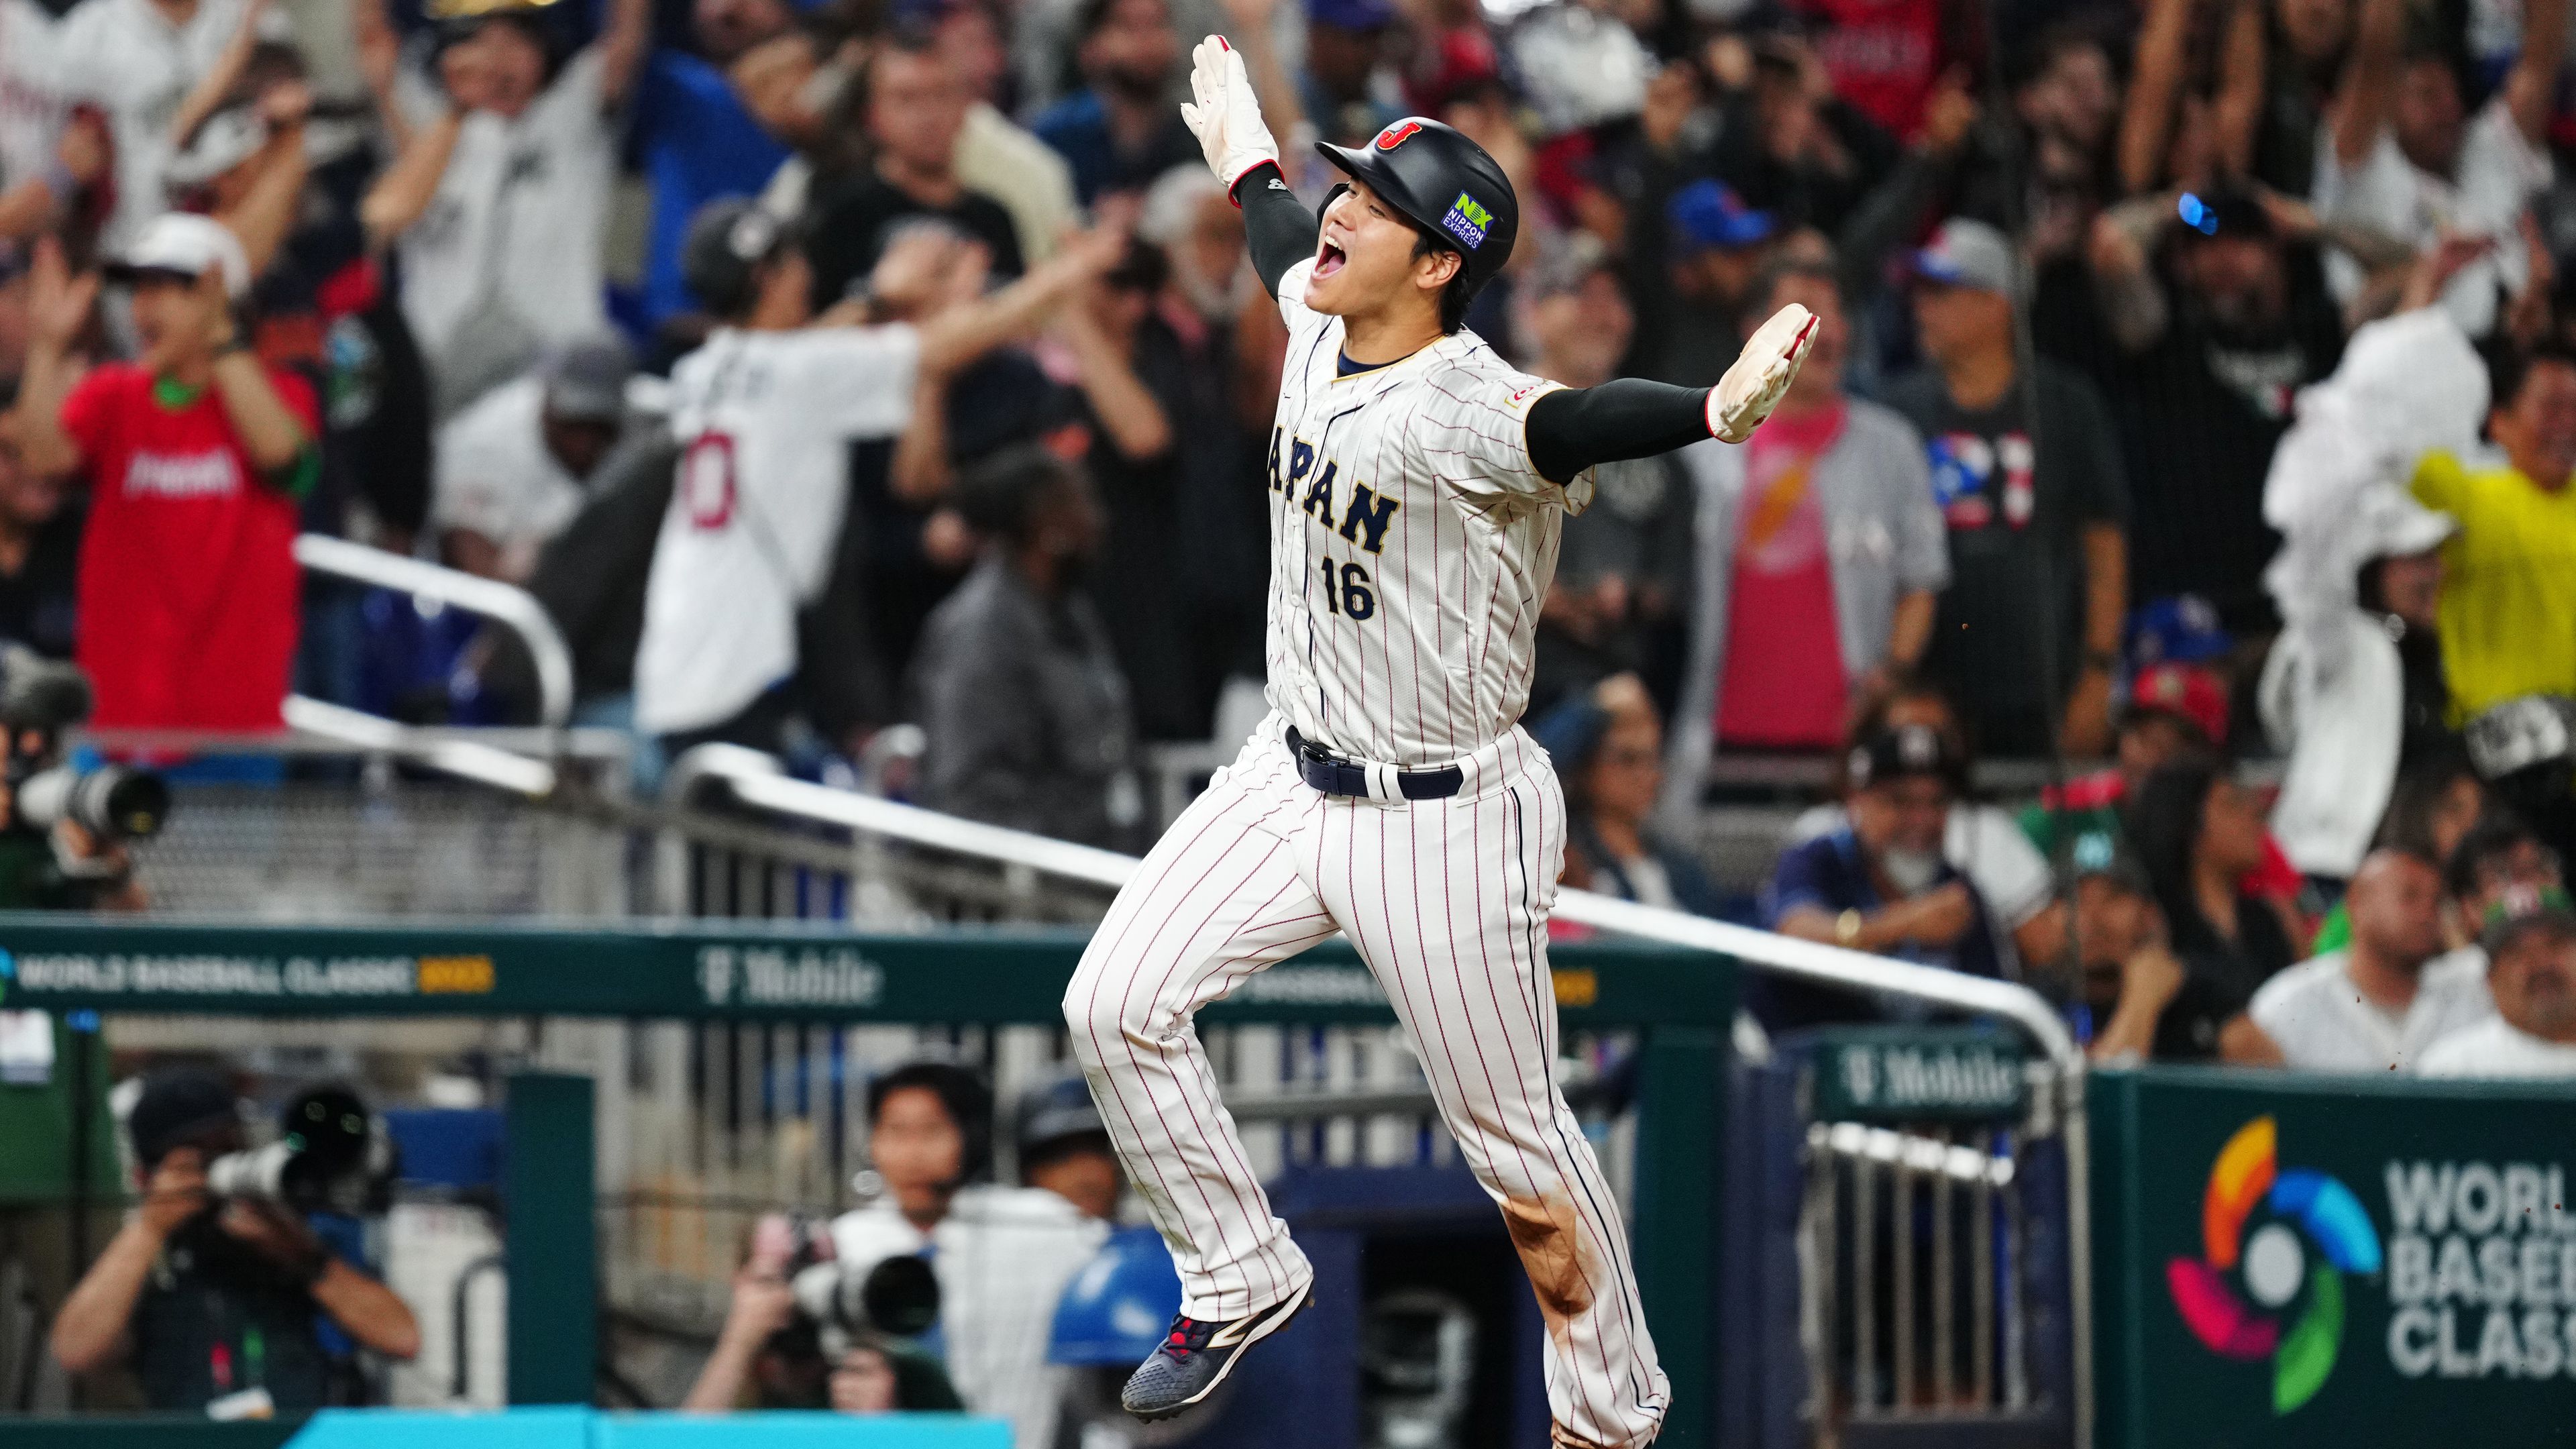 Elképesztő fizetést kap a japán baseball-játékos